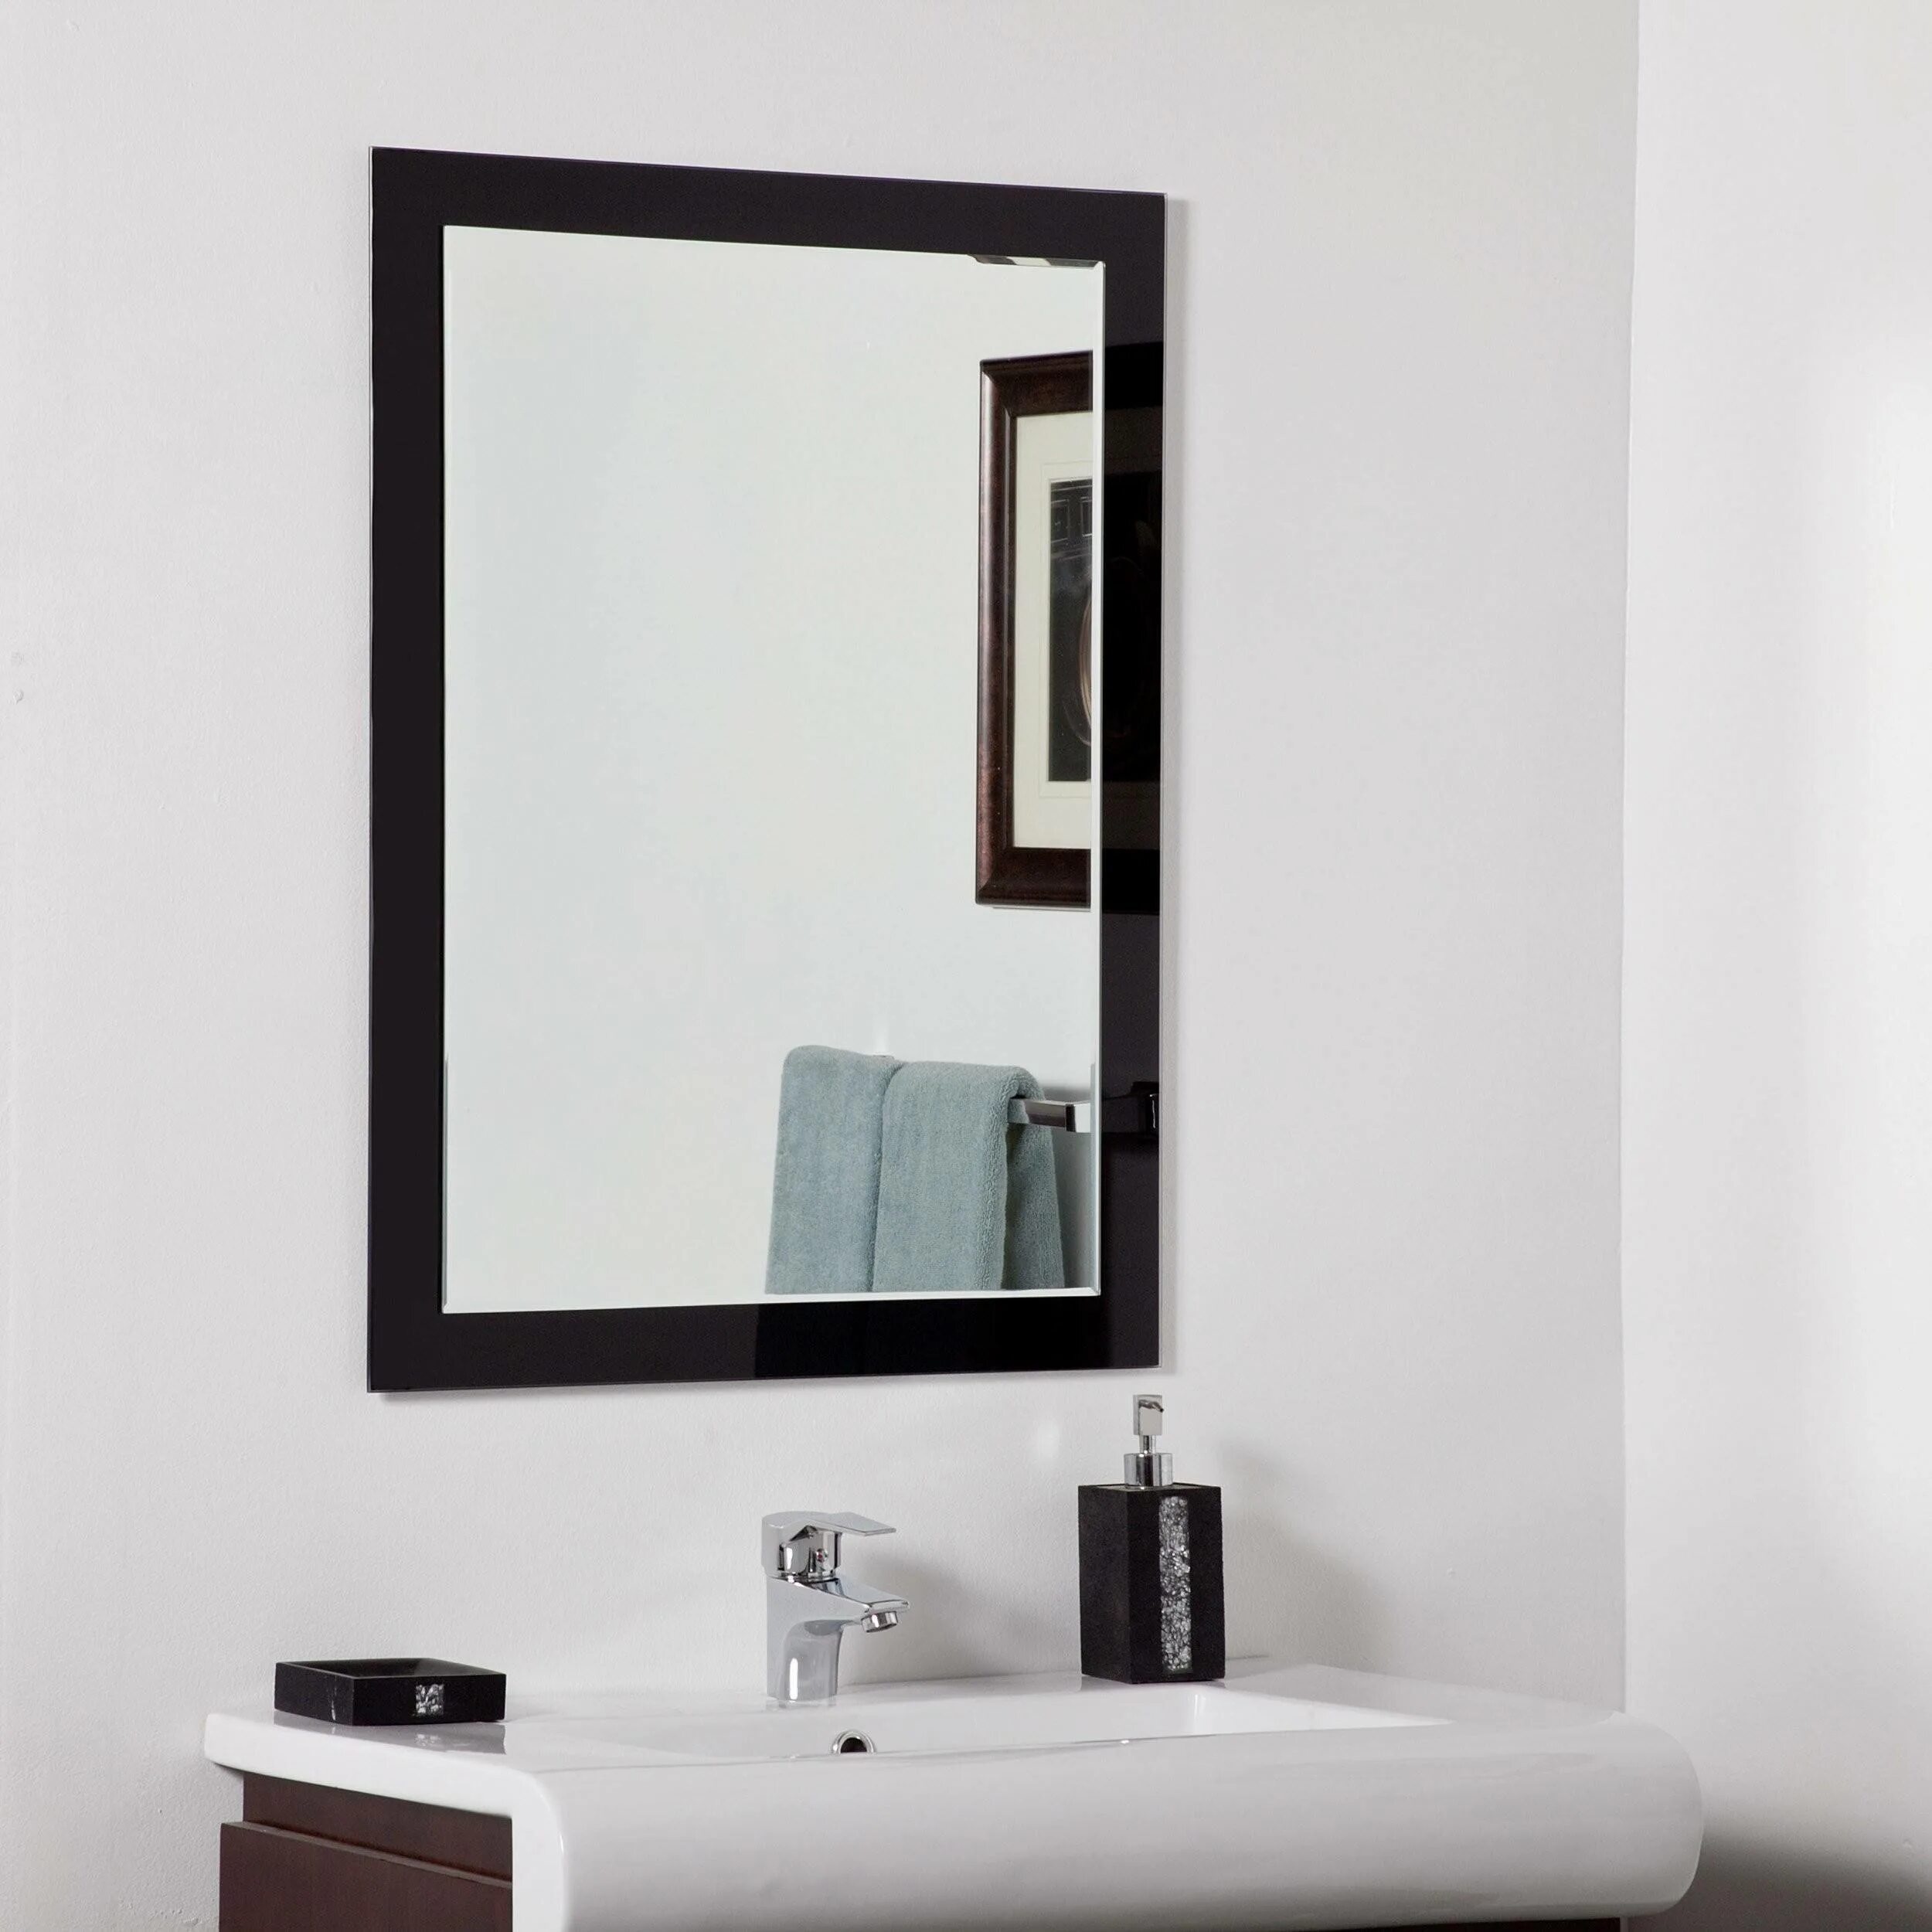 Зеркала в ванную белые. Зеркало в ванную прямоугольное. Зеркало в черной раме в ванную. Зеркало в ванную чернок. Зеркало в ванную с черной рамкой.